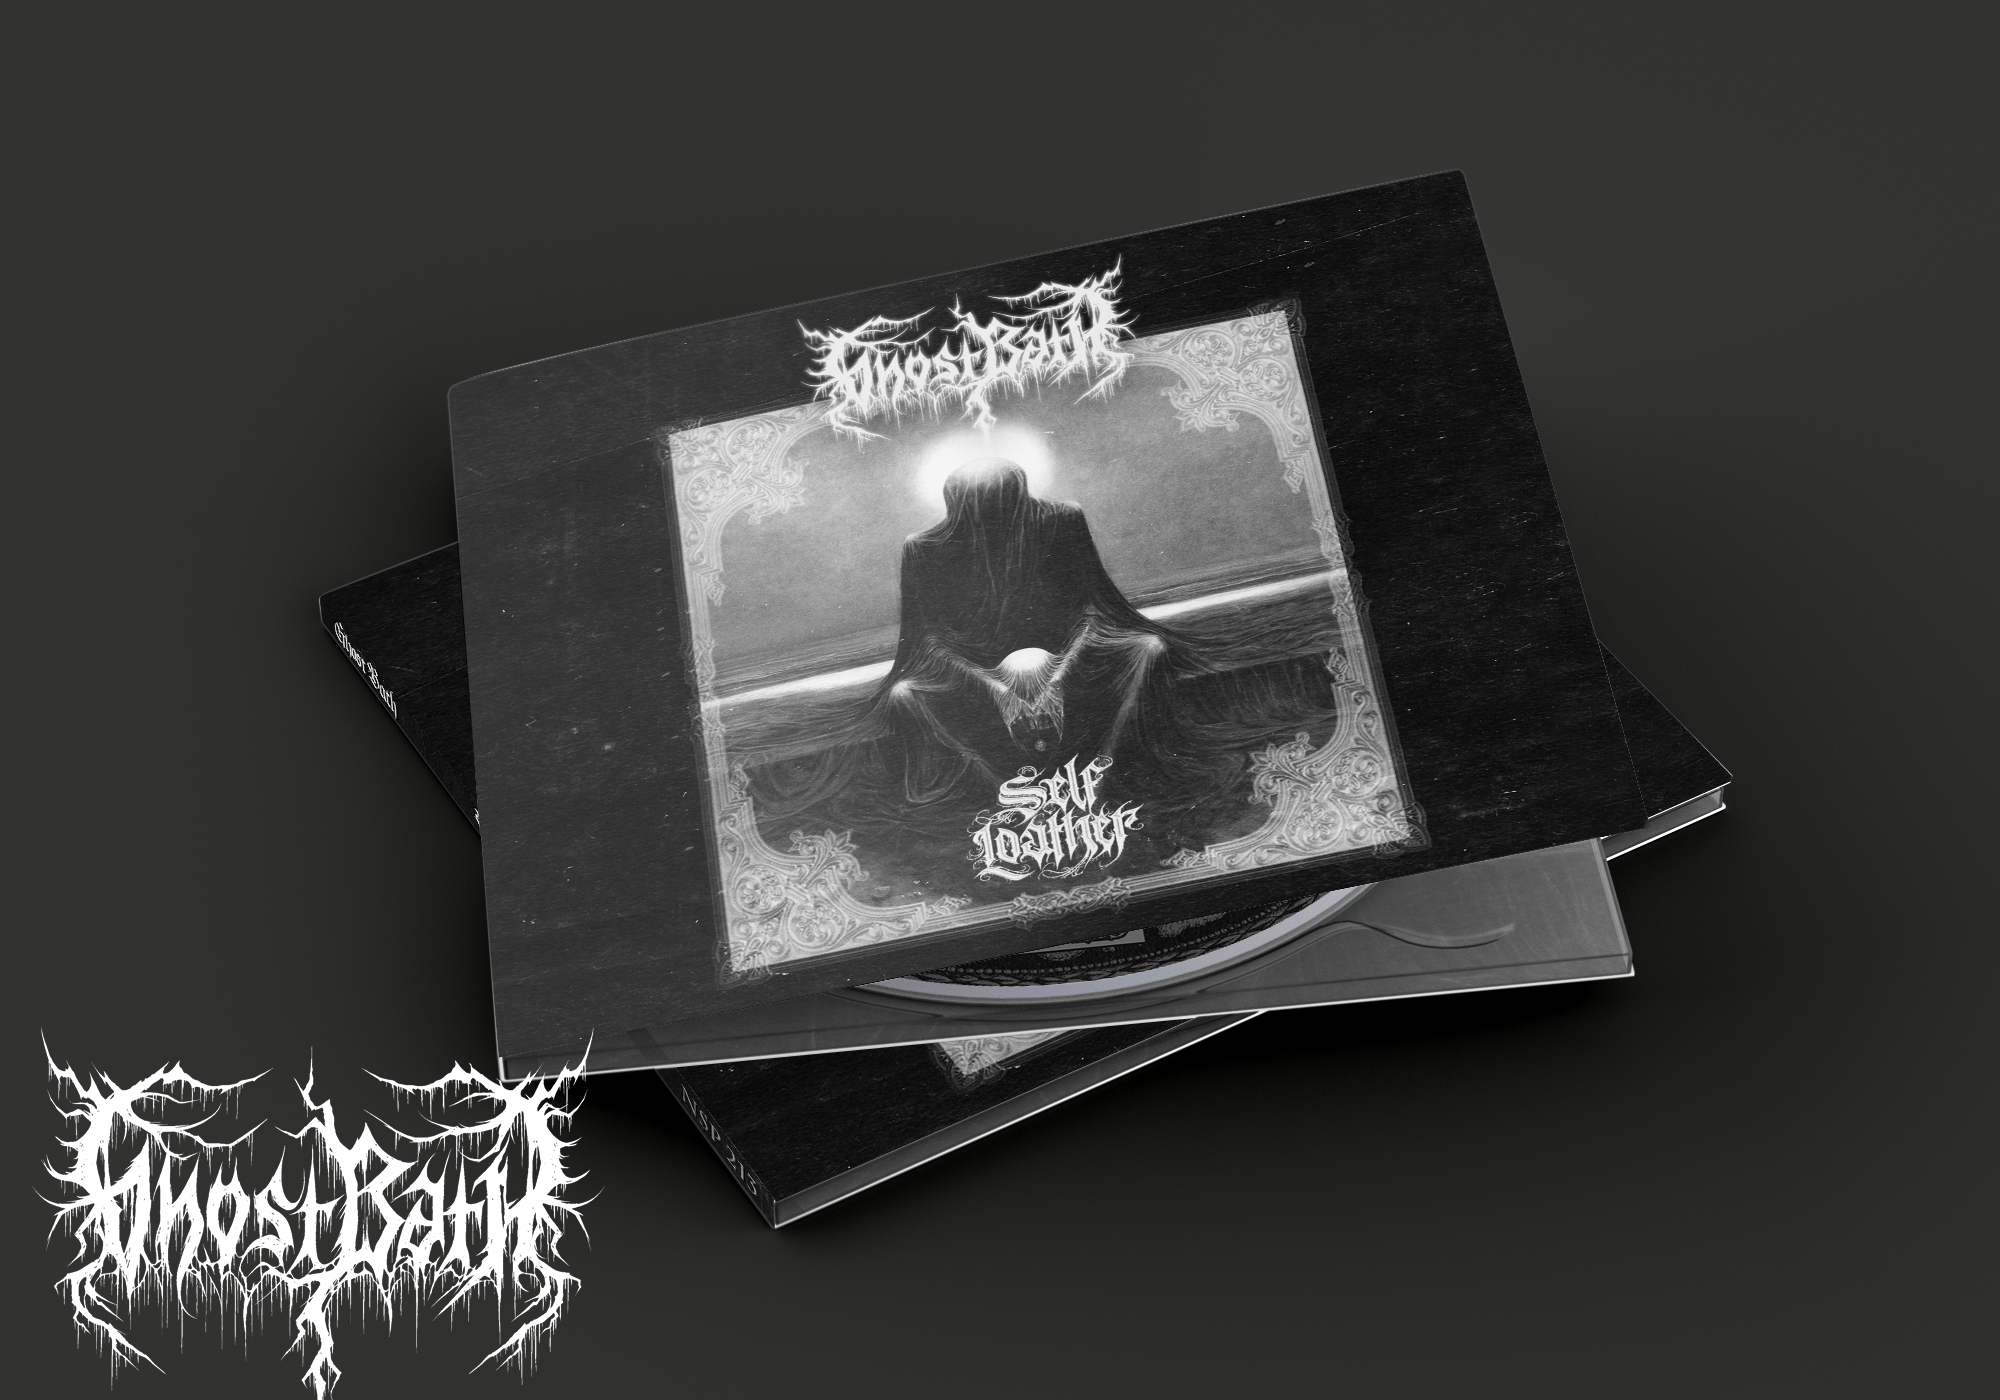 Ghost Bath - Self Loather DIGI CD